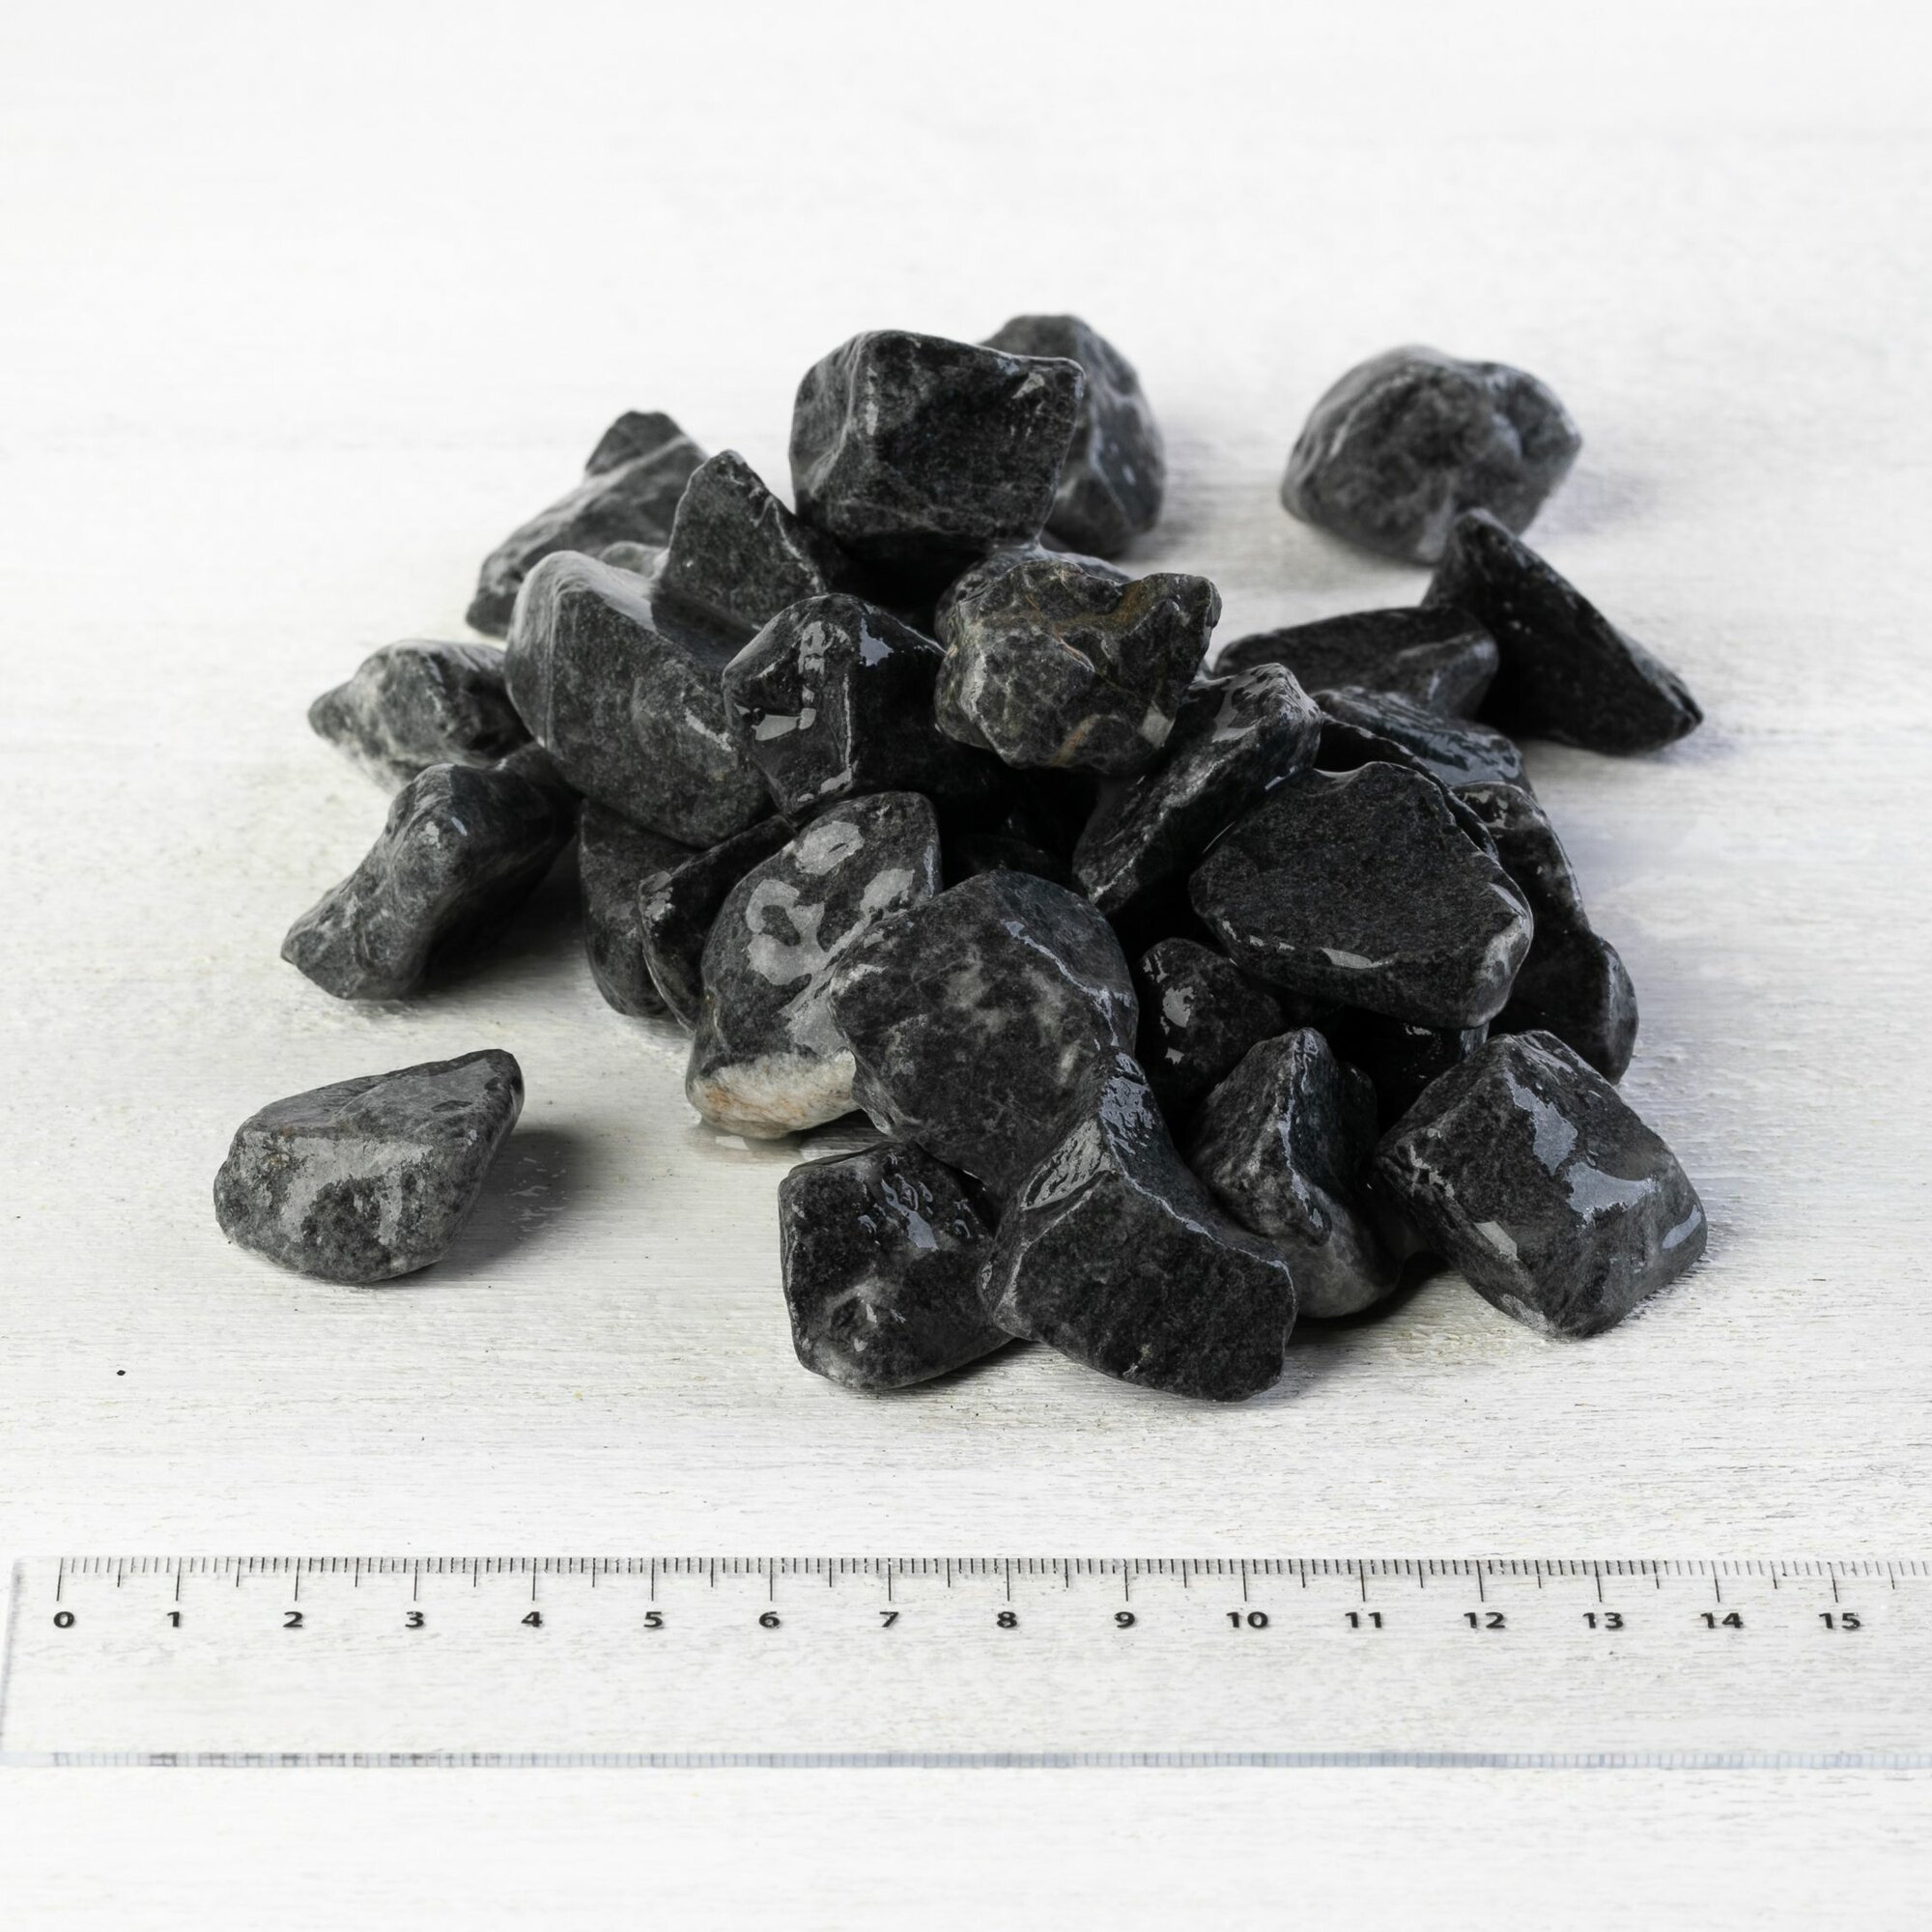 Камень ландшафтный мрамор черный Доломит фракция 7-12 мм 3 кг (315). Декоративный грунт каменная крошка